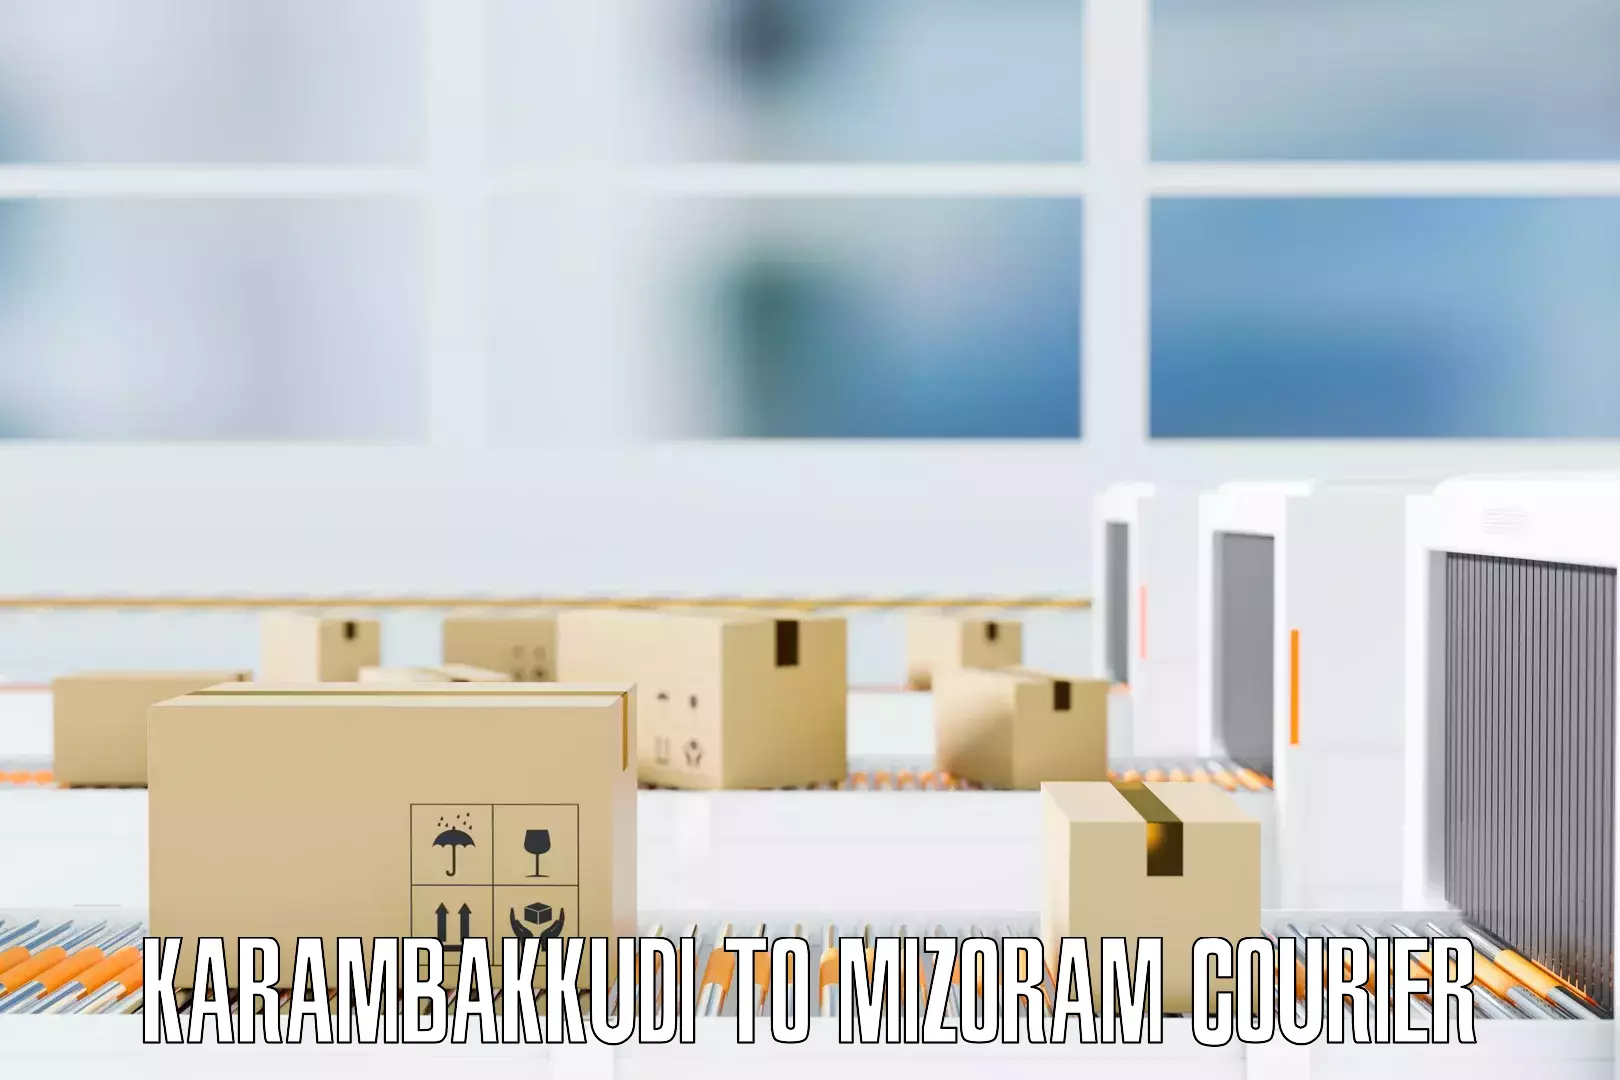 Residential furniture movers Karambakkudi to Mizoram